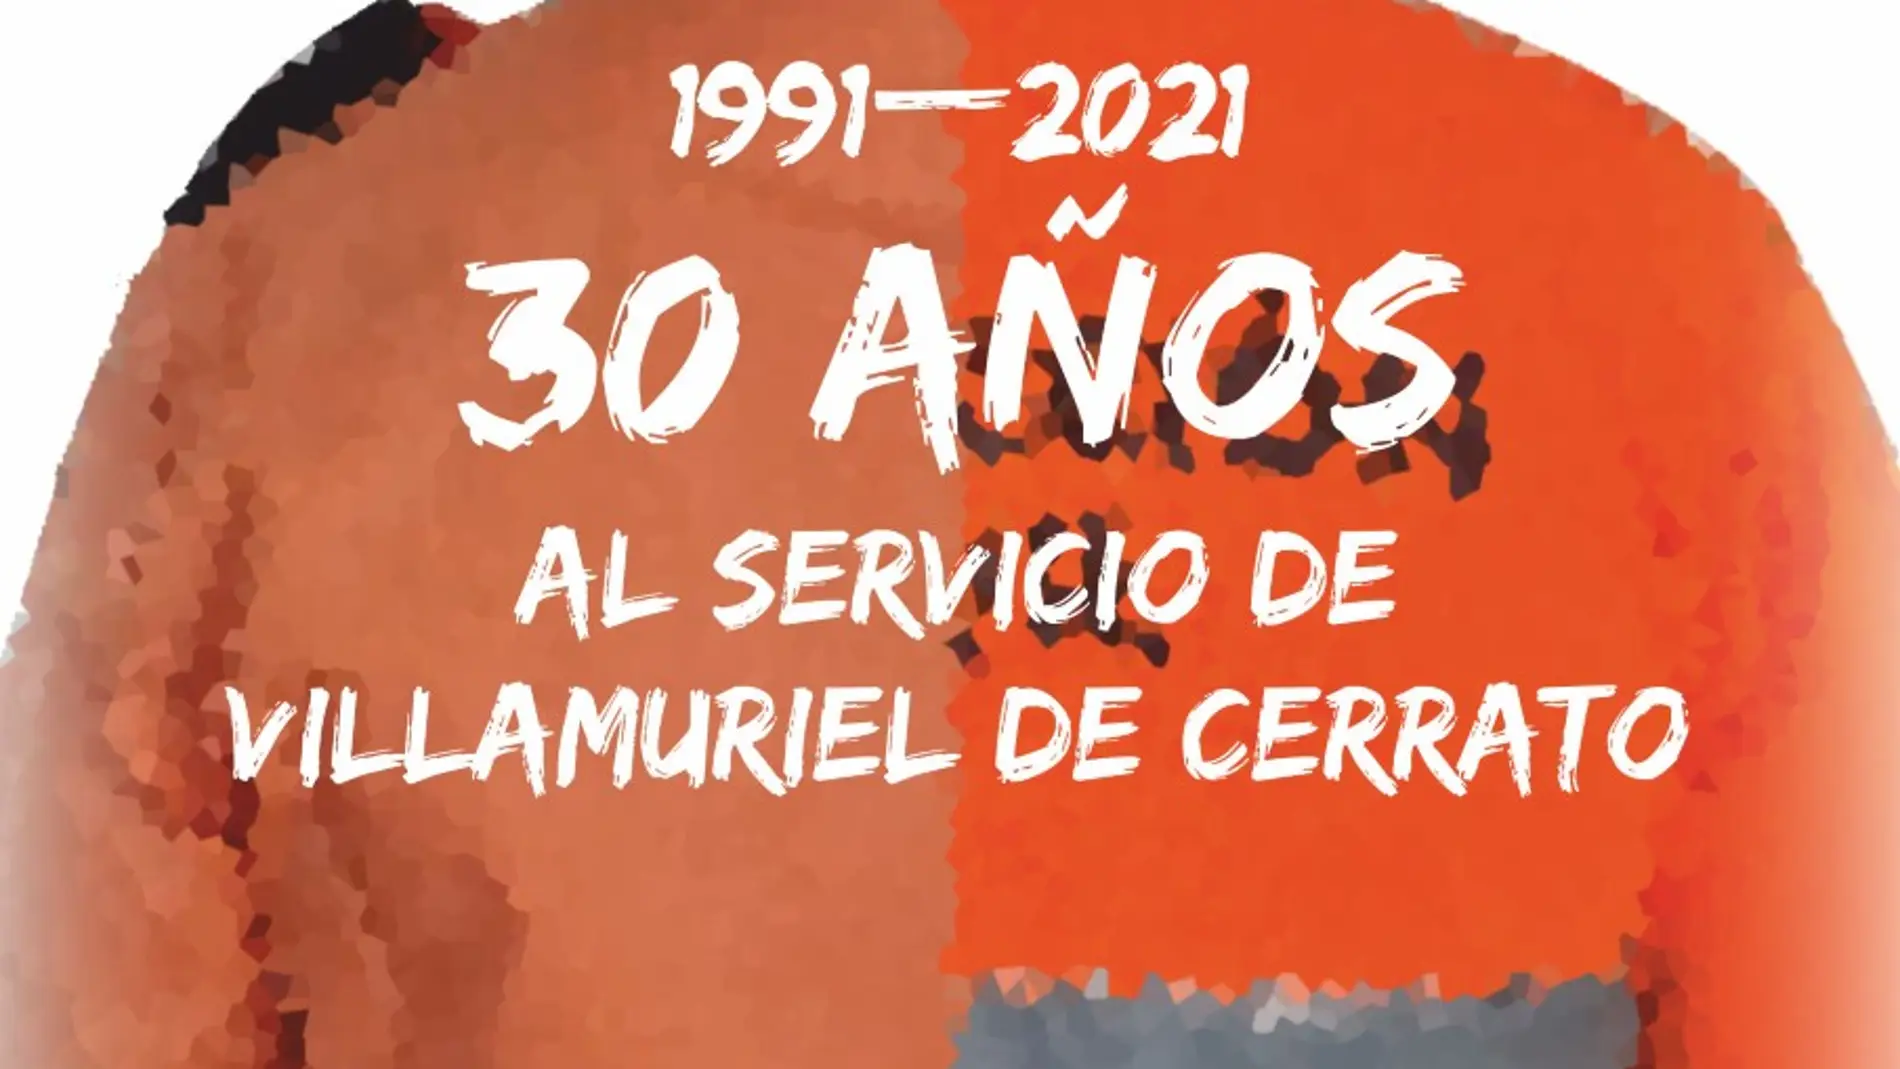 Protección Civil de Villamuriel de Cerrato celebra su 30 aniversario